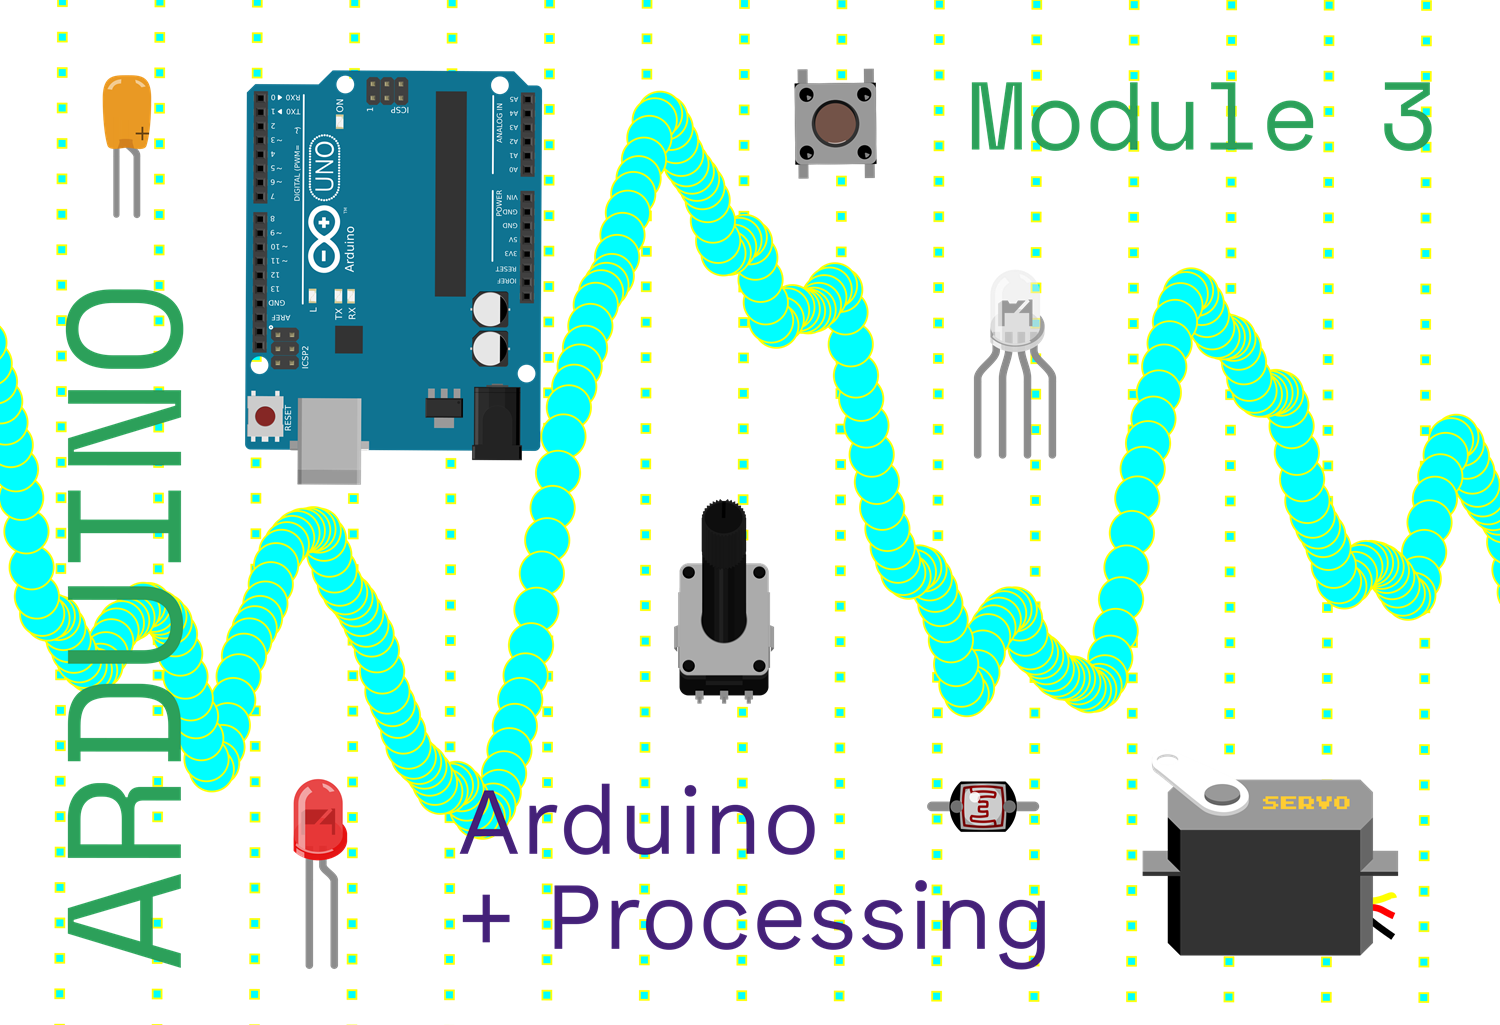 Introduction à l'électronique sensée - Arduino (Module 3 - Arduino + Processing)